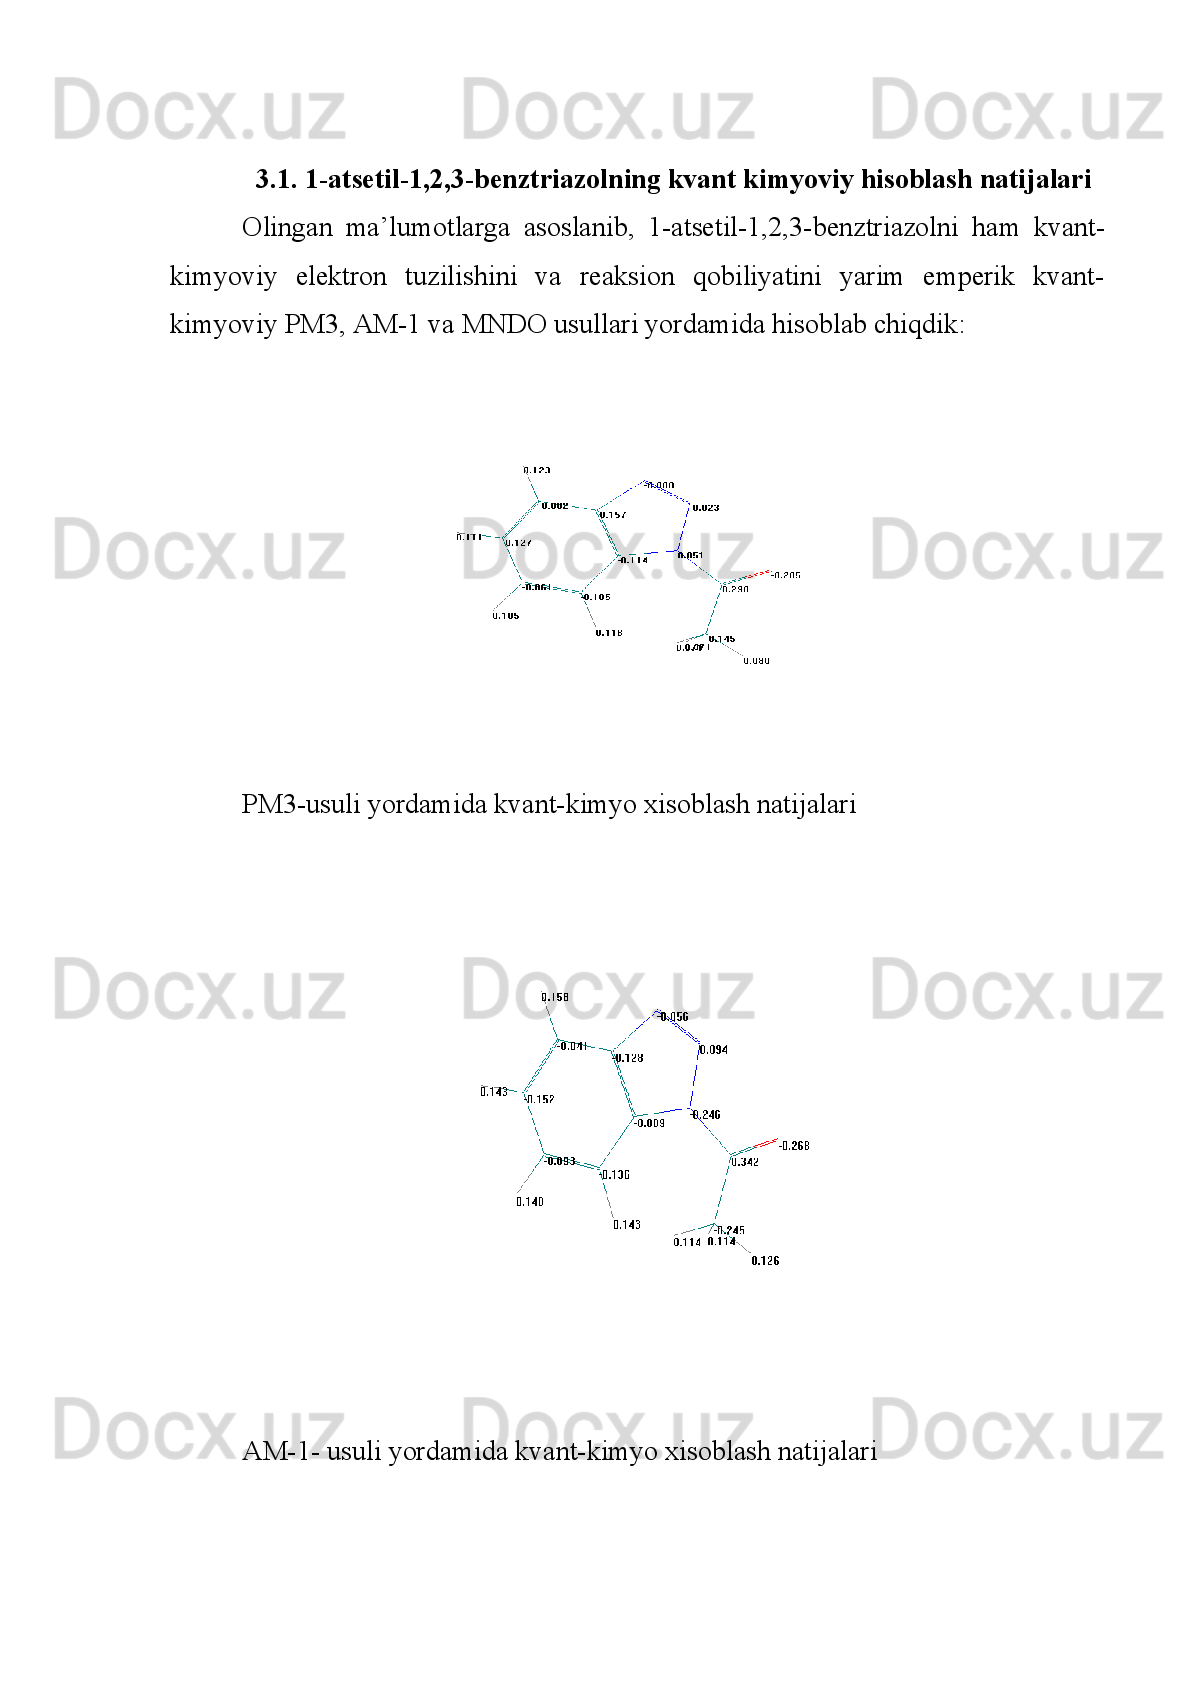 poliempirik metodlar ishlab chiqilgan.  (12-бетдан)  MNDO metodi INDO ning
modifikatsiyalangan ko’rinishi hisoblanadi [47]. 
Quyidagi   [50-54]   ishlarda   mualiflar   ligandlarning   protonlangan   shakllariga
asoslanib,   2-amino-1,3,4-tiadiazol   va   2-amino-5-etil-1,3,4-tiadiazollarni
elektron tuzilishini  kvant-kimyoviy hisoblashlar asosida o’rganildi. Natijalarga
ko’ra,   atomlarning   hisoblangan   zaryadlari   qiymati,   MNDO   usuli   bo’yicha
olingan   bo’lib,   bunday   modellarda   molekuladagi   koordinatsiyalanadigan
reaksion   markazlarning     aytishning   imkonini   bermaydi,   negaki   modellarda
molekulalararo   vodorod   bog’   hisobga   olinmagan   edi.   Shuning   uchun   adikvat
model   protonlangan   shakllarning   energiya   qiymatlari   farqidan   (13)   va
boshlang’ich molekulalarning energiyasi (12) dan tuziladi.N	N	
S	
N	H	2	R	1	
2
3	4
5	N	N	
S	
N	H	2	R	1	2
3	4
5	
H+
R = H, C
2 H
5
(12) (13)
MNDO   metodi   natijalarining   ko’rsatishicha,   N 3
-   donor   atomiga     (13)
protonning   koordinatsiyalanishi,   molekuladagi   hamma   atomlarning   elektron
zichligi koordinirlanadigan atomga to’planadi, natijada manfiy zaryad qiymatini
oladi   va   donor-akseptor   yo’nalish   konsepsiyasiga   asosan,   amalga   oshadi.
Atomlar   orasida   bog’   uzunligi   koordinnirlangan   molekulada,   ligandga   (12)
nisbattan   kattadir,   bog’   uzunligi       esa   (Н +
-formadagi   protonga   bo’lgan   oraliq
(13)) kamayadi.
[48] –maqolada mualliflari Sn (II) ning 2-amino-5-metil-1,3,4-tiadiazol bilan
kompleksining IQ-spektroskopik qo’zg’alish natijalari  o’rganilgan. Yuqoridagi
ilmiy   ishlardagi   kabi,   bu   ishda   ham   mualliflar   IQ-spektroskopiya   natijalariga
tayanib, geterotsiklik ligandda koordinatsiya ekzotsiklik azot atomidan ketishini
ta’kidlashgan.   